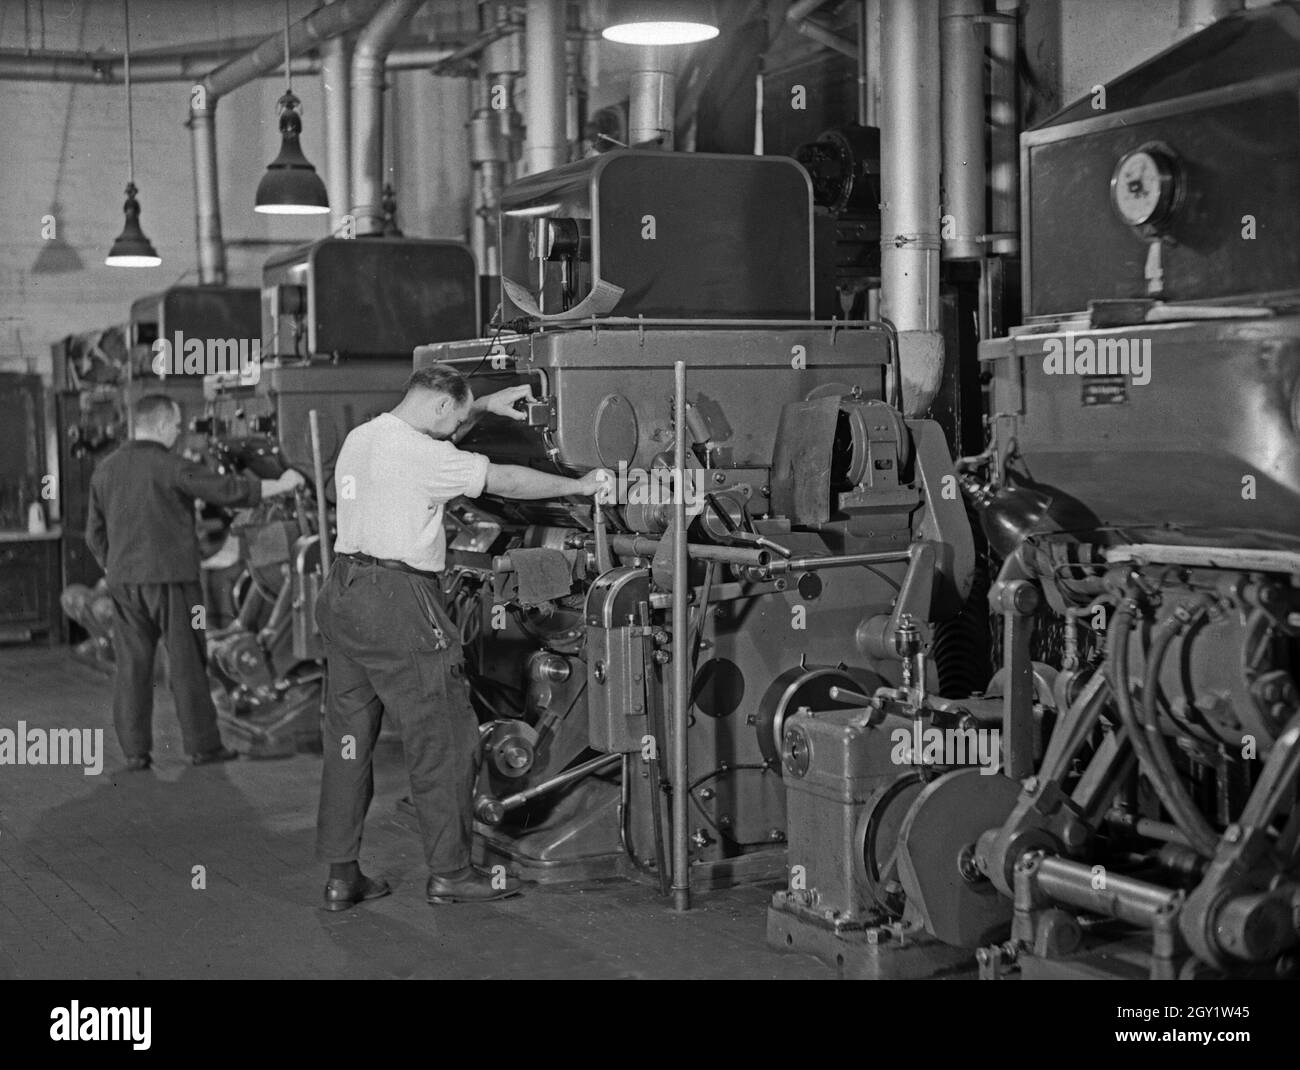 Arbeiter an ihren Maschinen in einer Fabrikhalle, Deutschland 1930er Jahre. Workers with their machines in a factory hall, Germany 1930s. Stock Photo